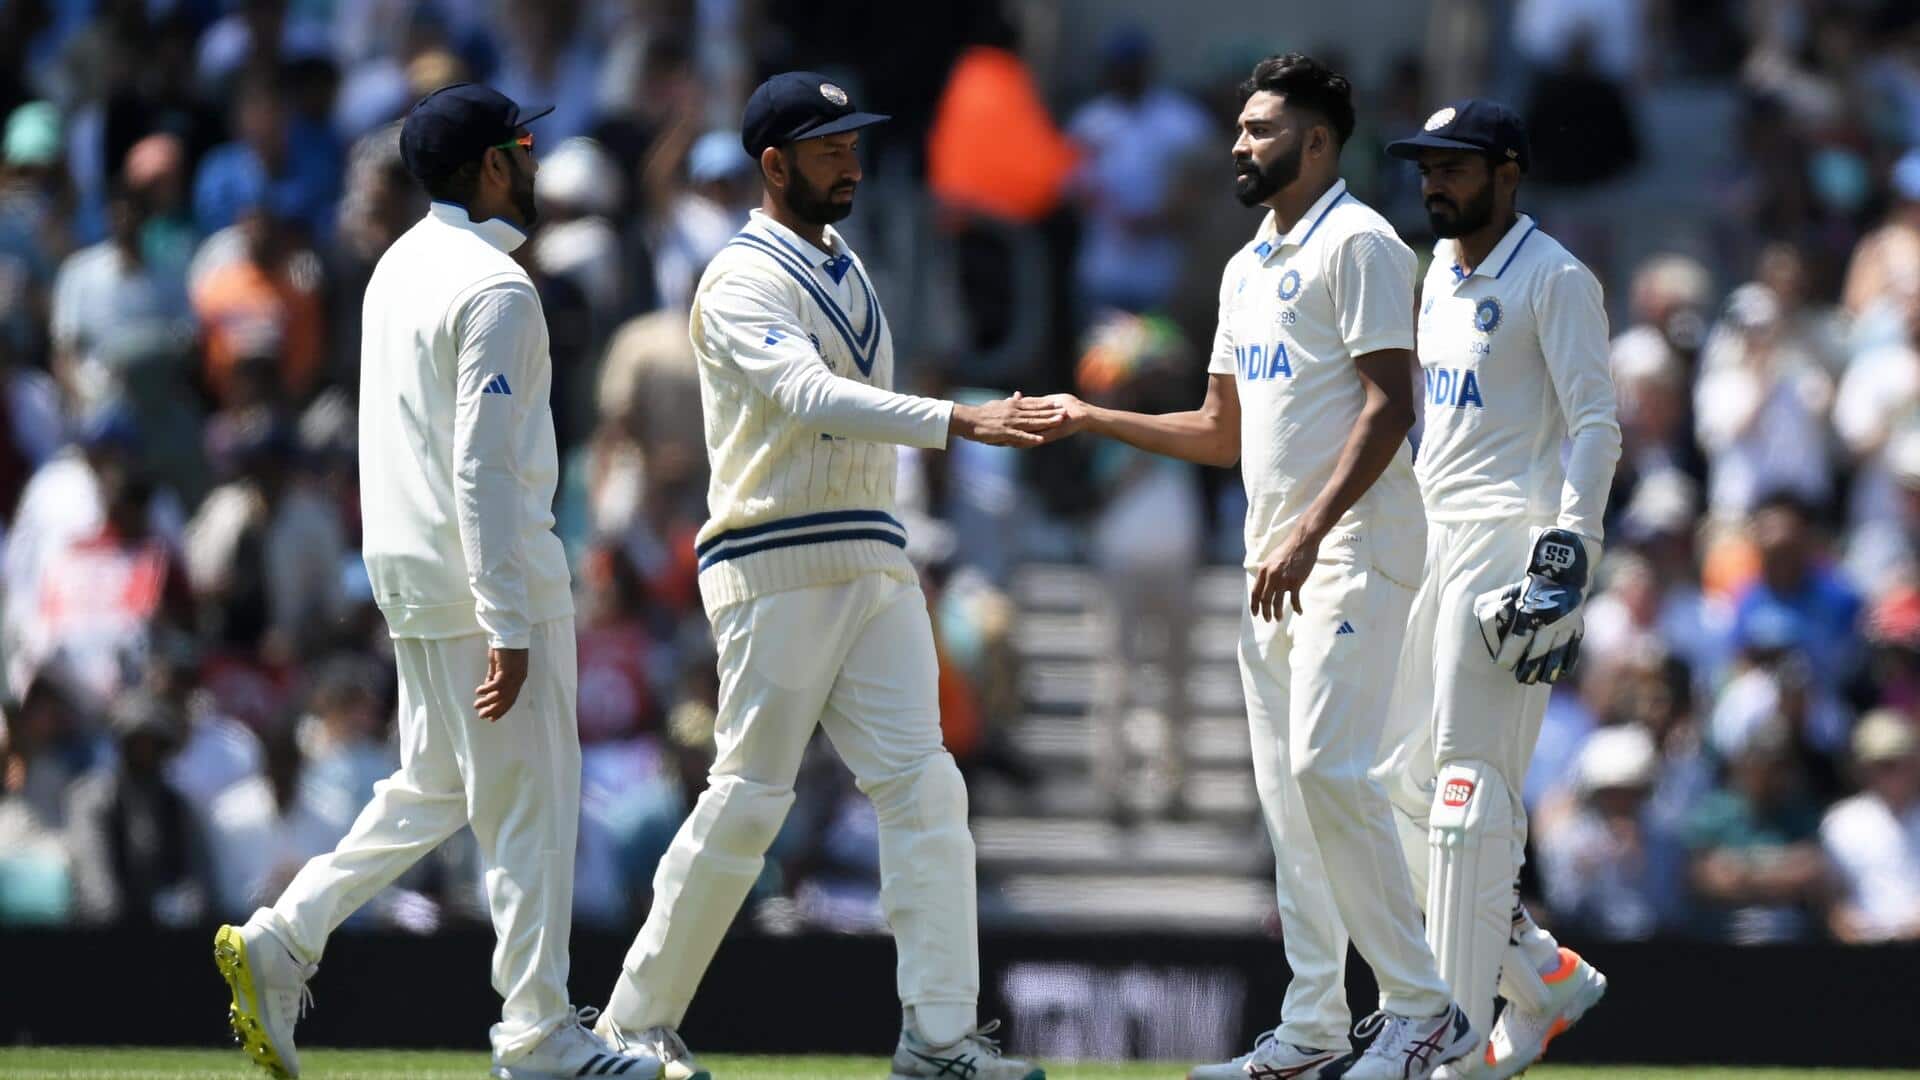 भारत के वेस्टइंडीज दौरे के शेड्यूल की हुई घोषणा, 12 जुलाई से शुरू होगी टेस्ट सीरीज 